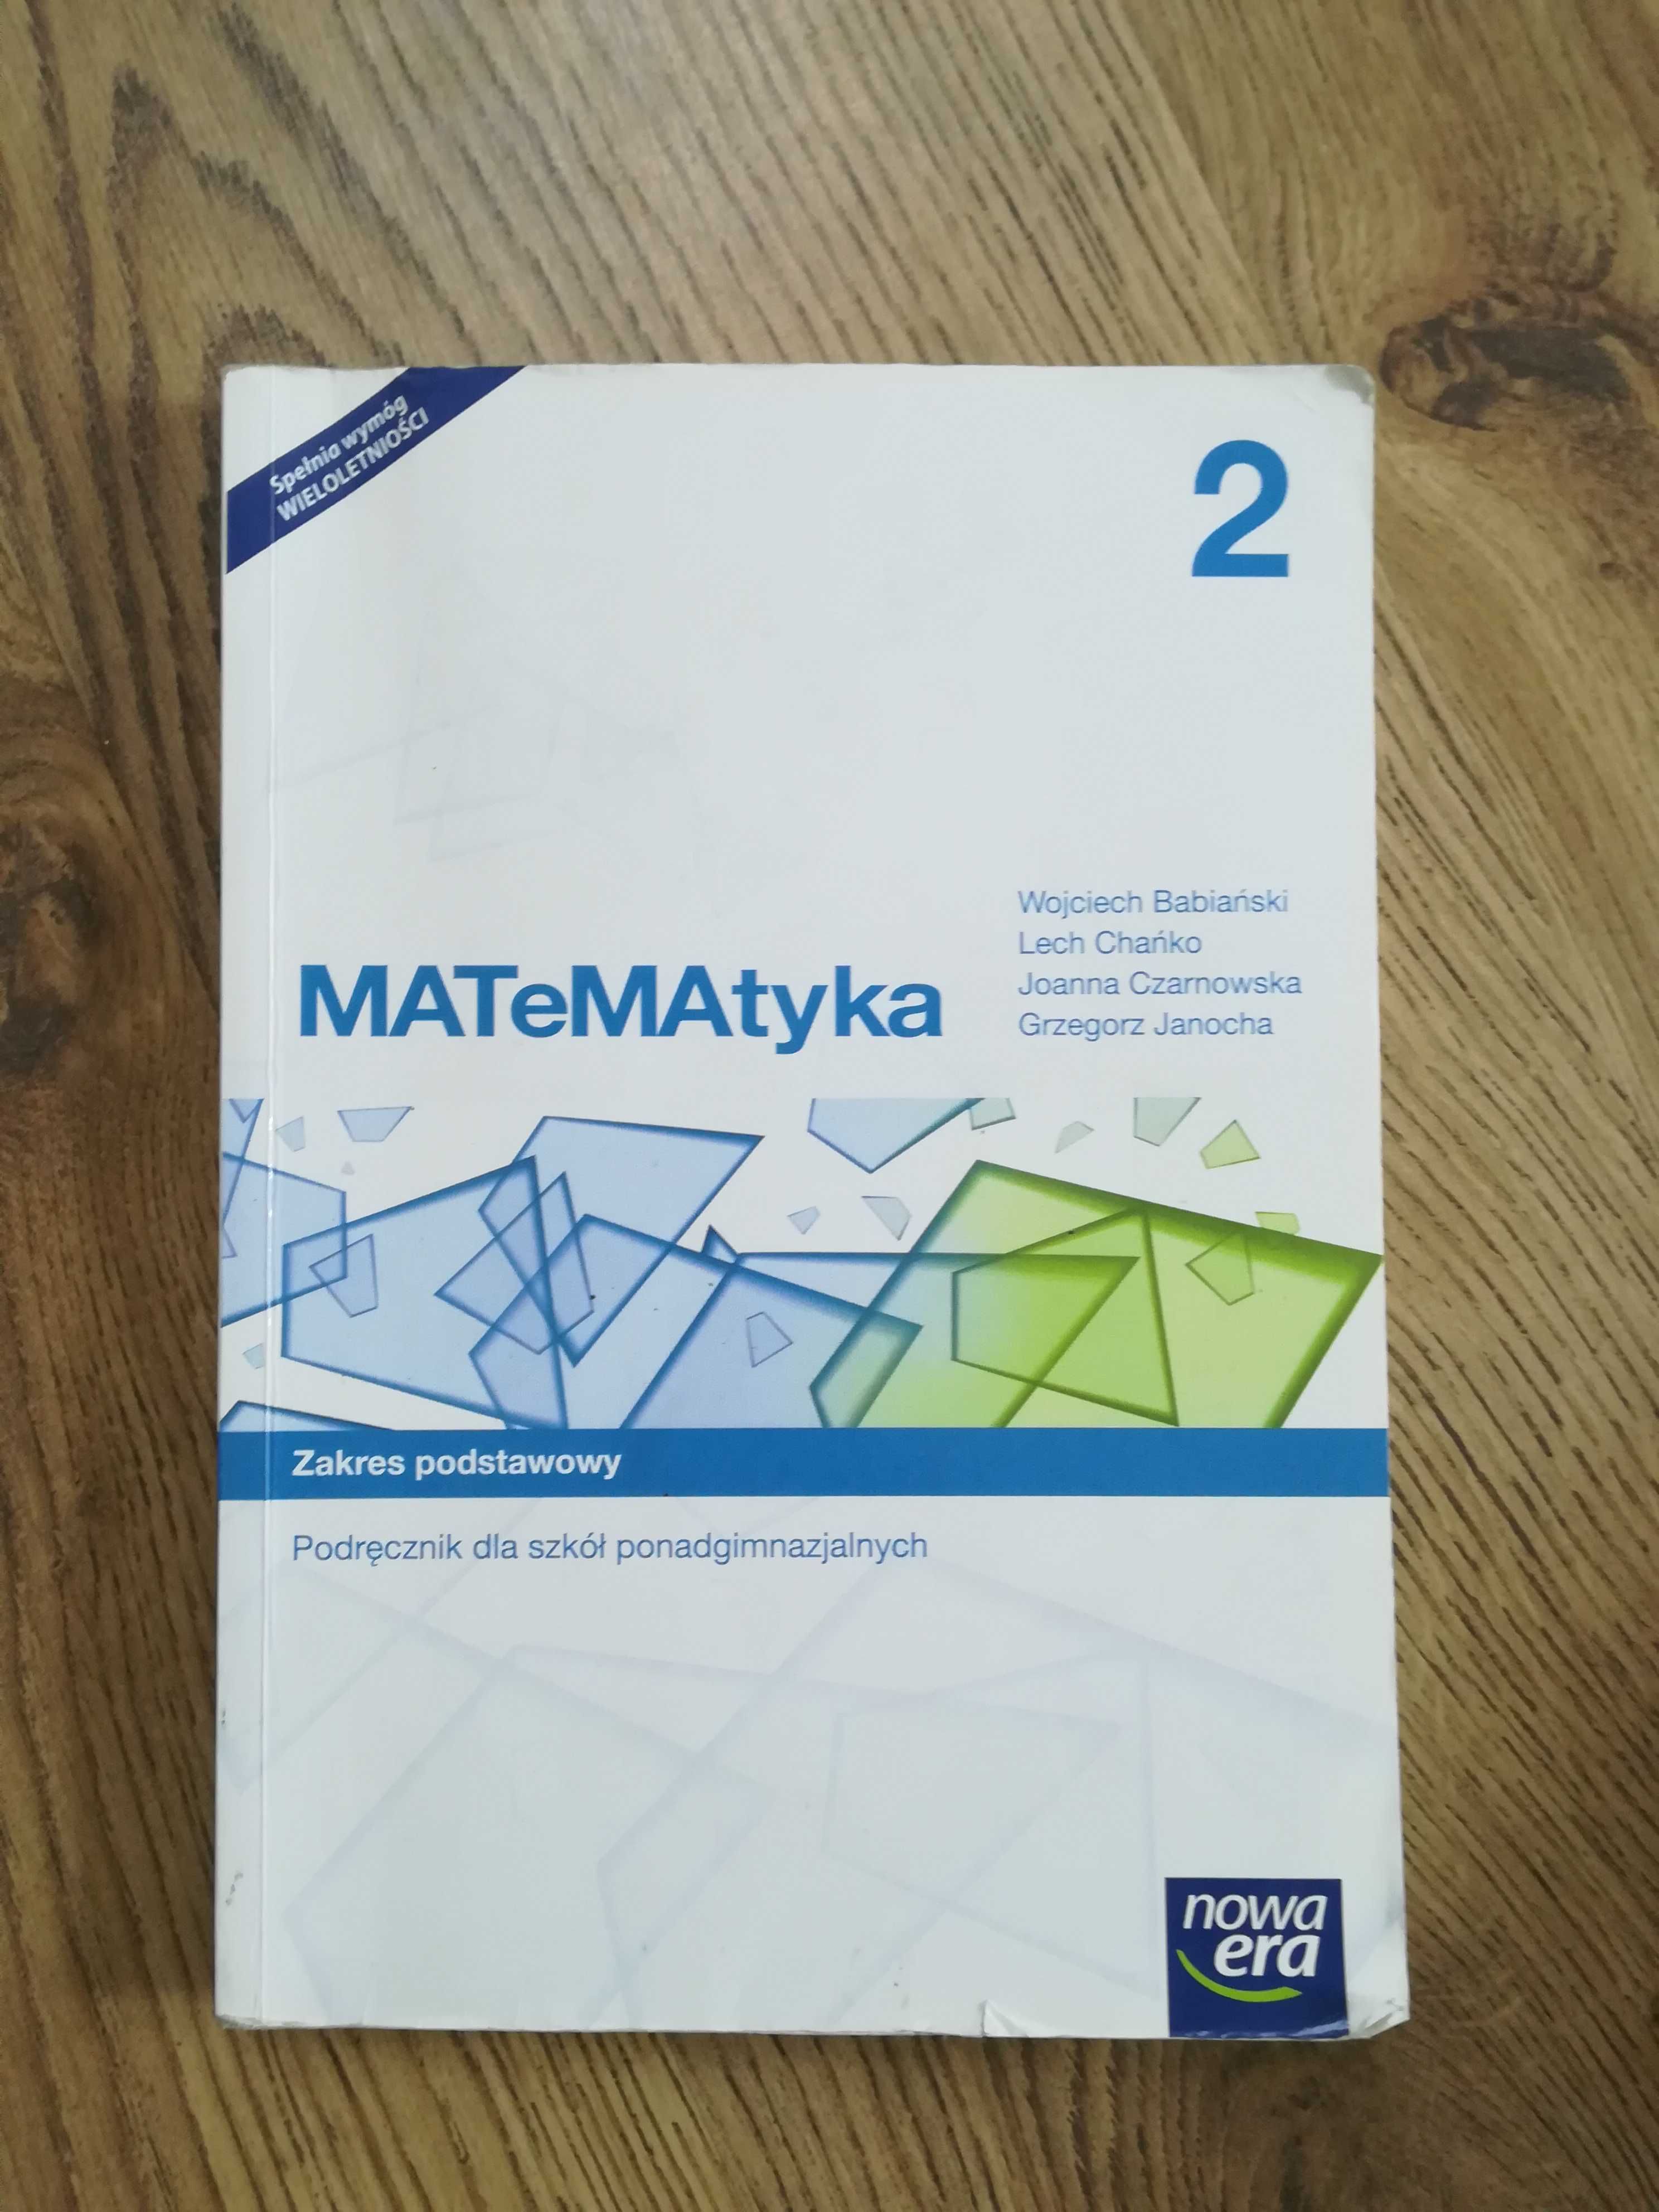 MATeMAtyka 2.
Podręcznik do matematyki.  Zakres podstawowy